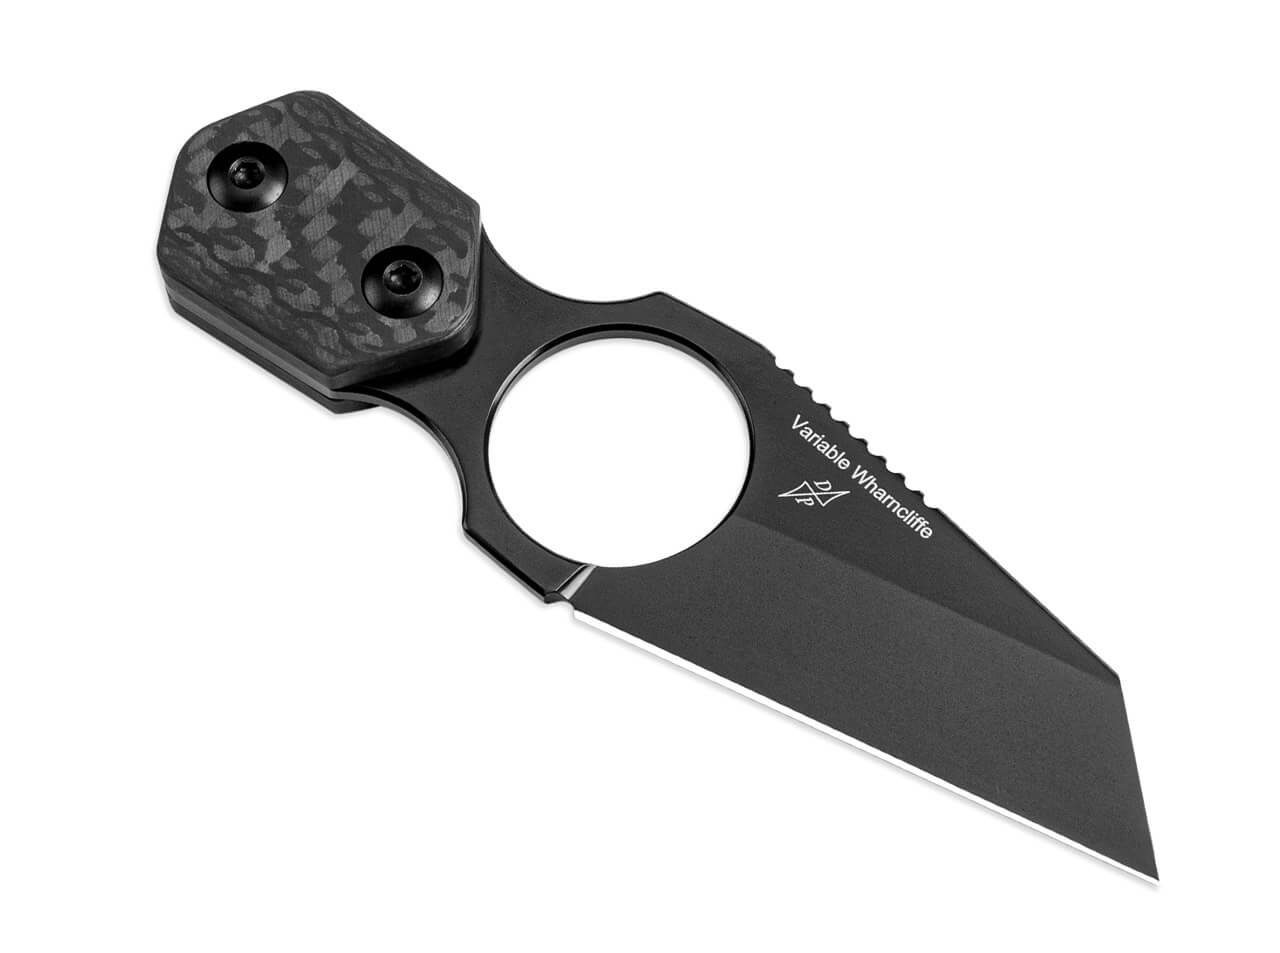 Wharncliffe Variable Kizer mit Neckknife Universalmesser CF Kizer Scheide